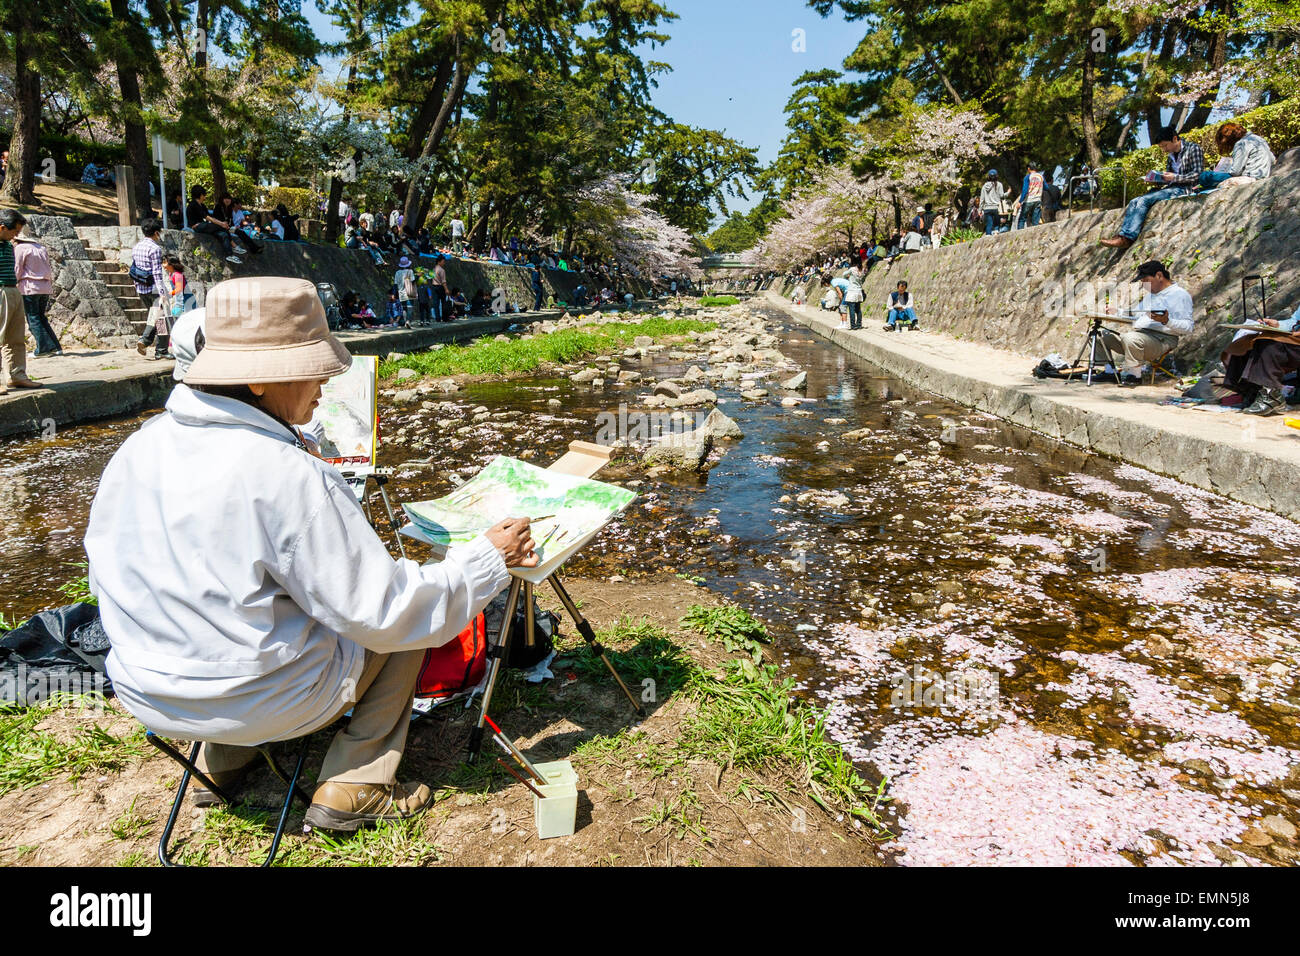 Uomo anziano seduto a dipingere su un cavalletto su una piccola isola in un fiume stretto in sole luminoso durante la stagione dei ciliegi in fiore in un luogo di bellezza locale. Foto Stock